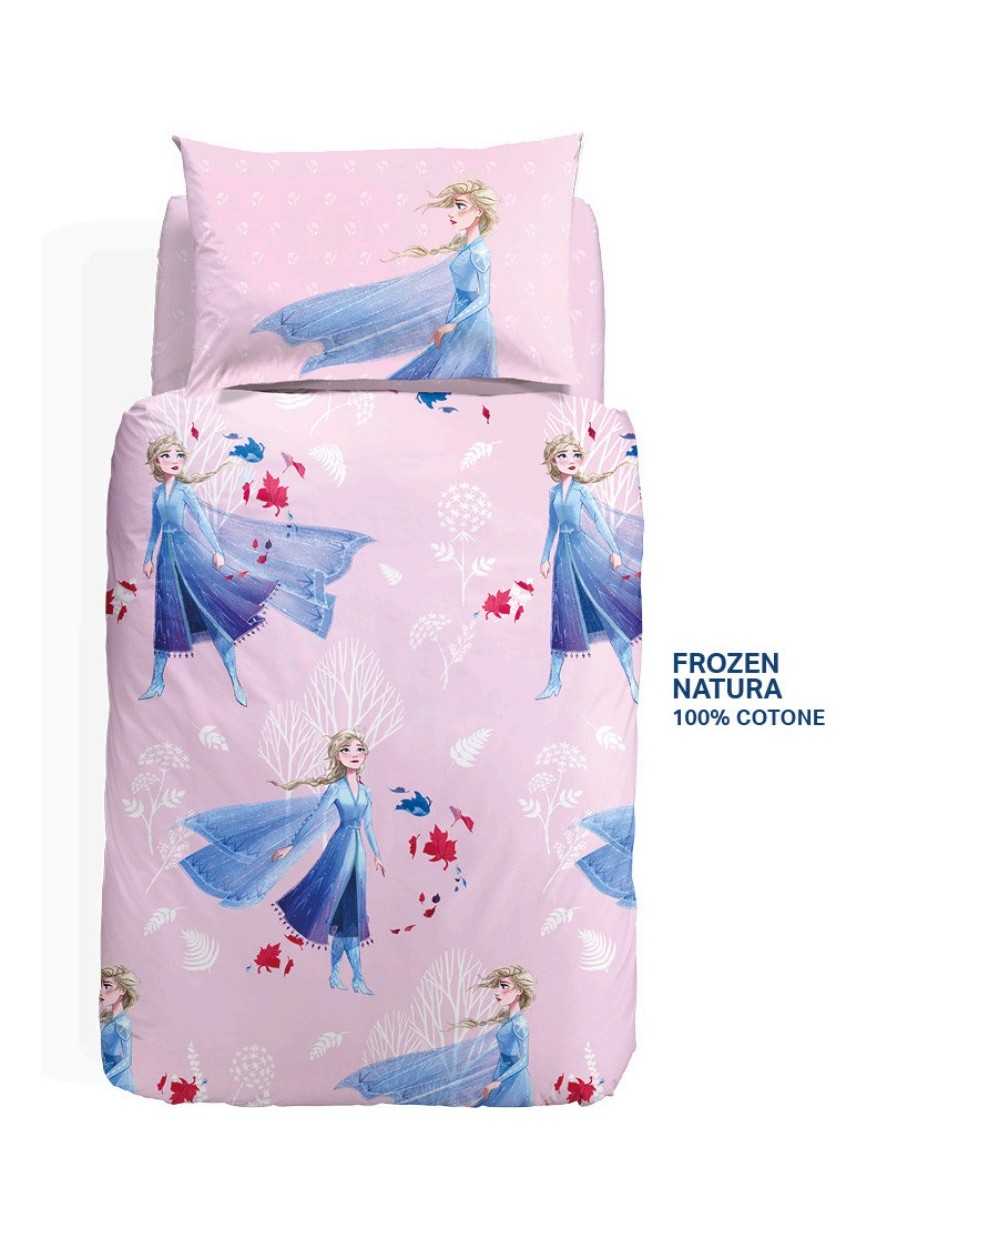 Bettbezug, Bettlaken Princess Frozen